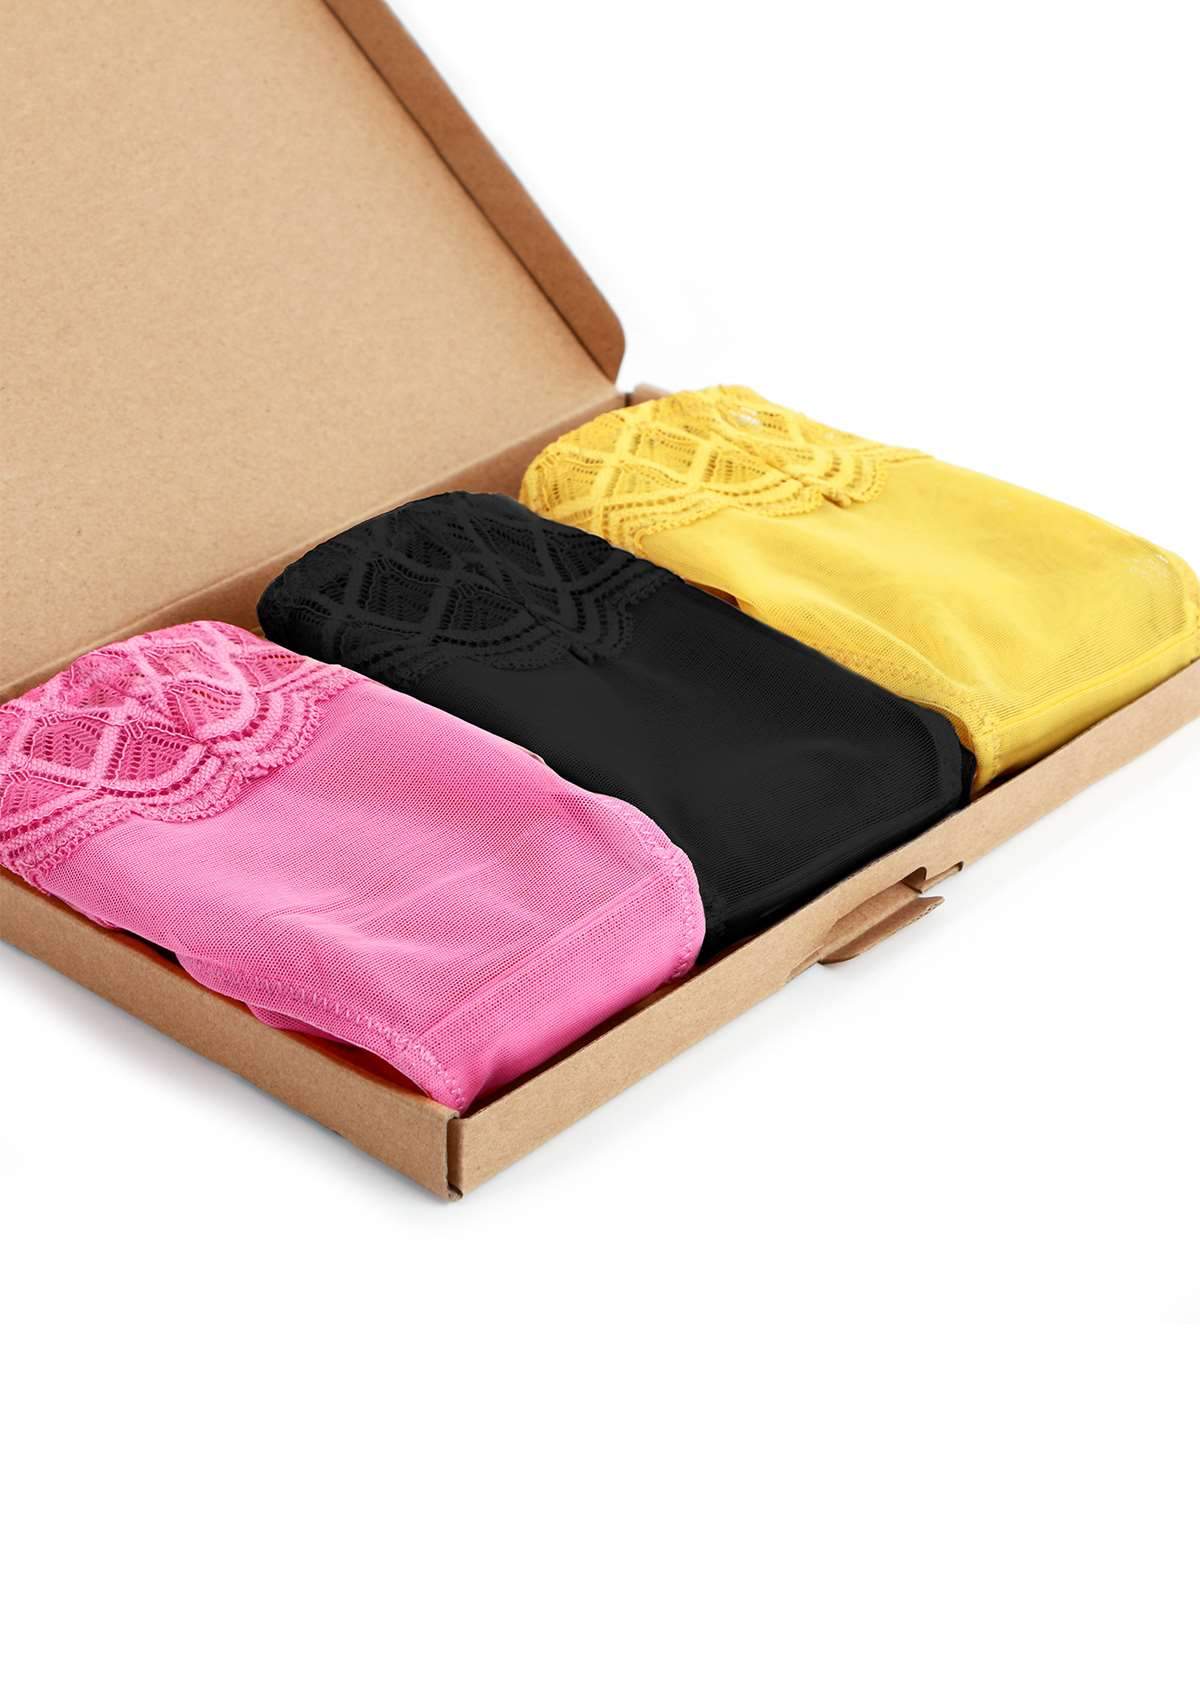 HSIA Plaid Lace Bikini Panties 3 Pack - XXL / Black+Yellow+Pink